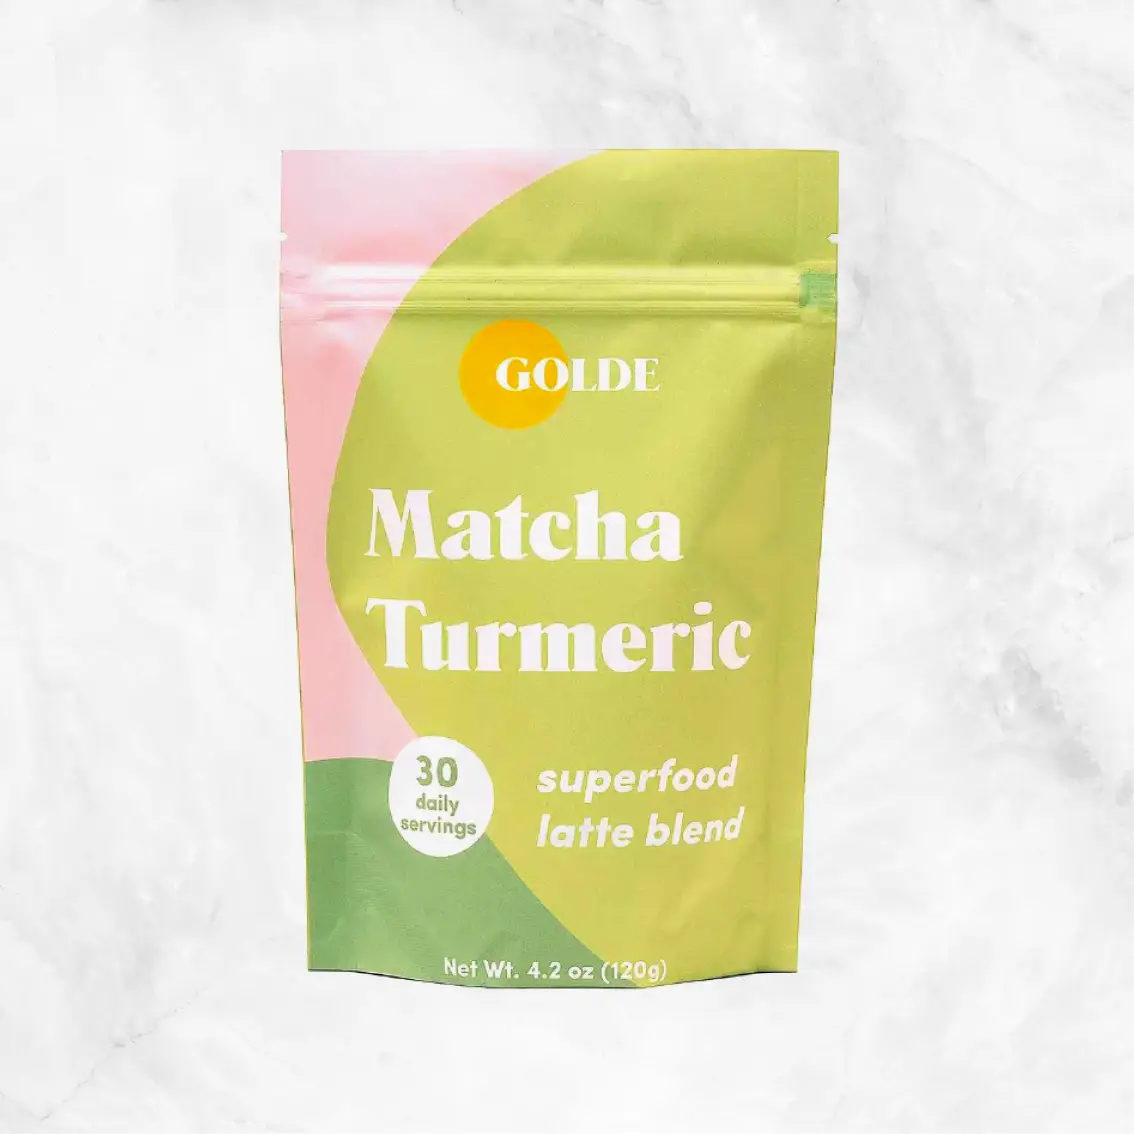 Golde - Matcha Turmeric Latte Blend